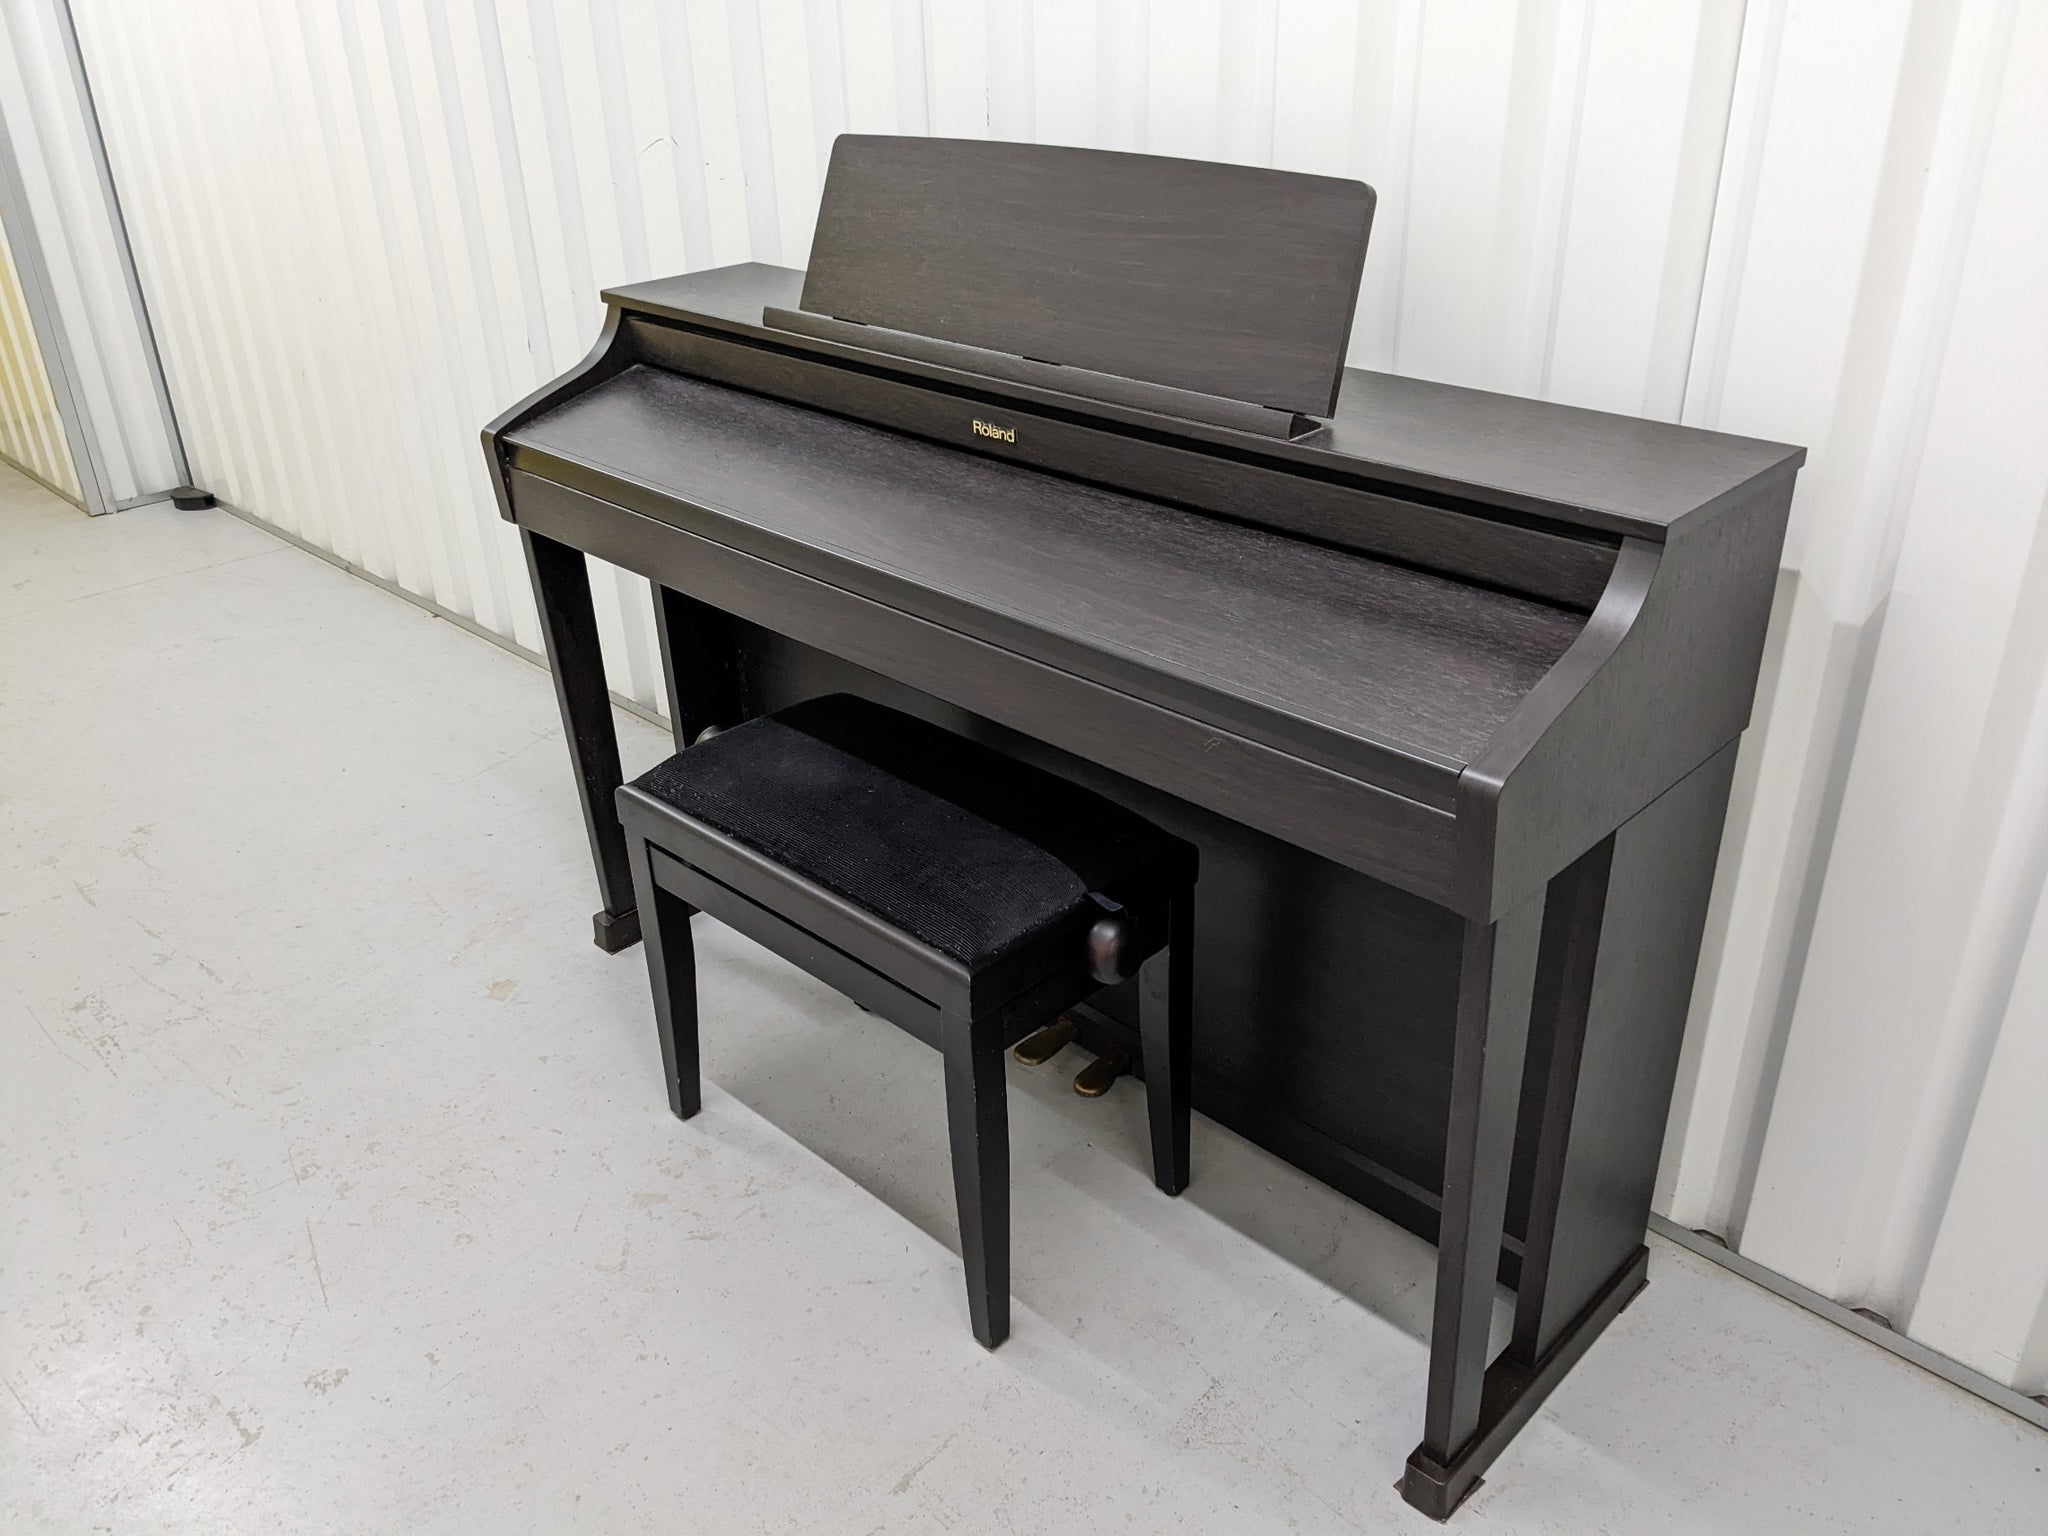 Roland - HP-302  SuperNATURAL Piano